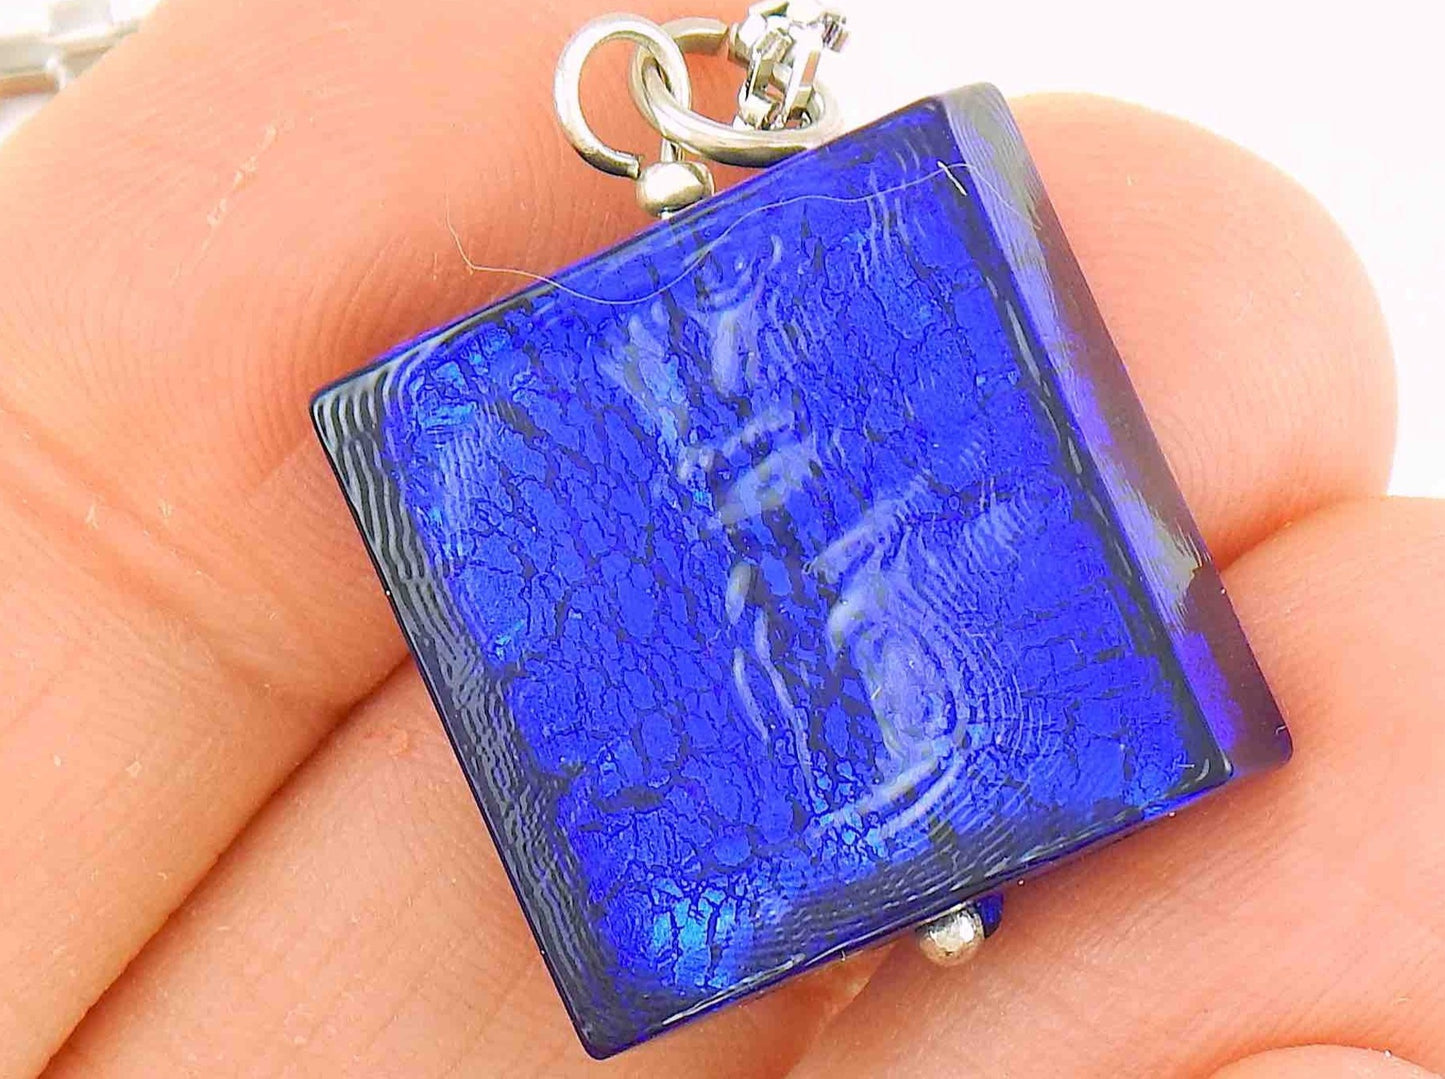 Collier 16 po carré en verre de Murano bleu profond sur feuille d'argent, chaîne à maillons rectangulaires acier inoxydable